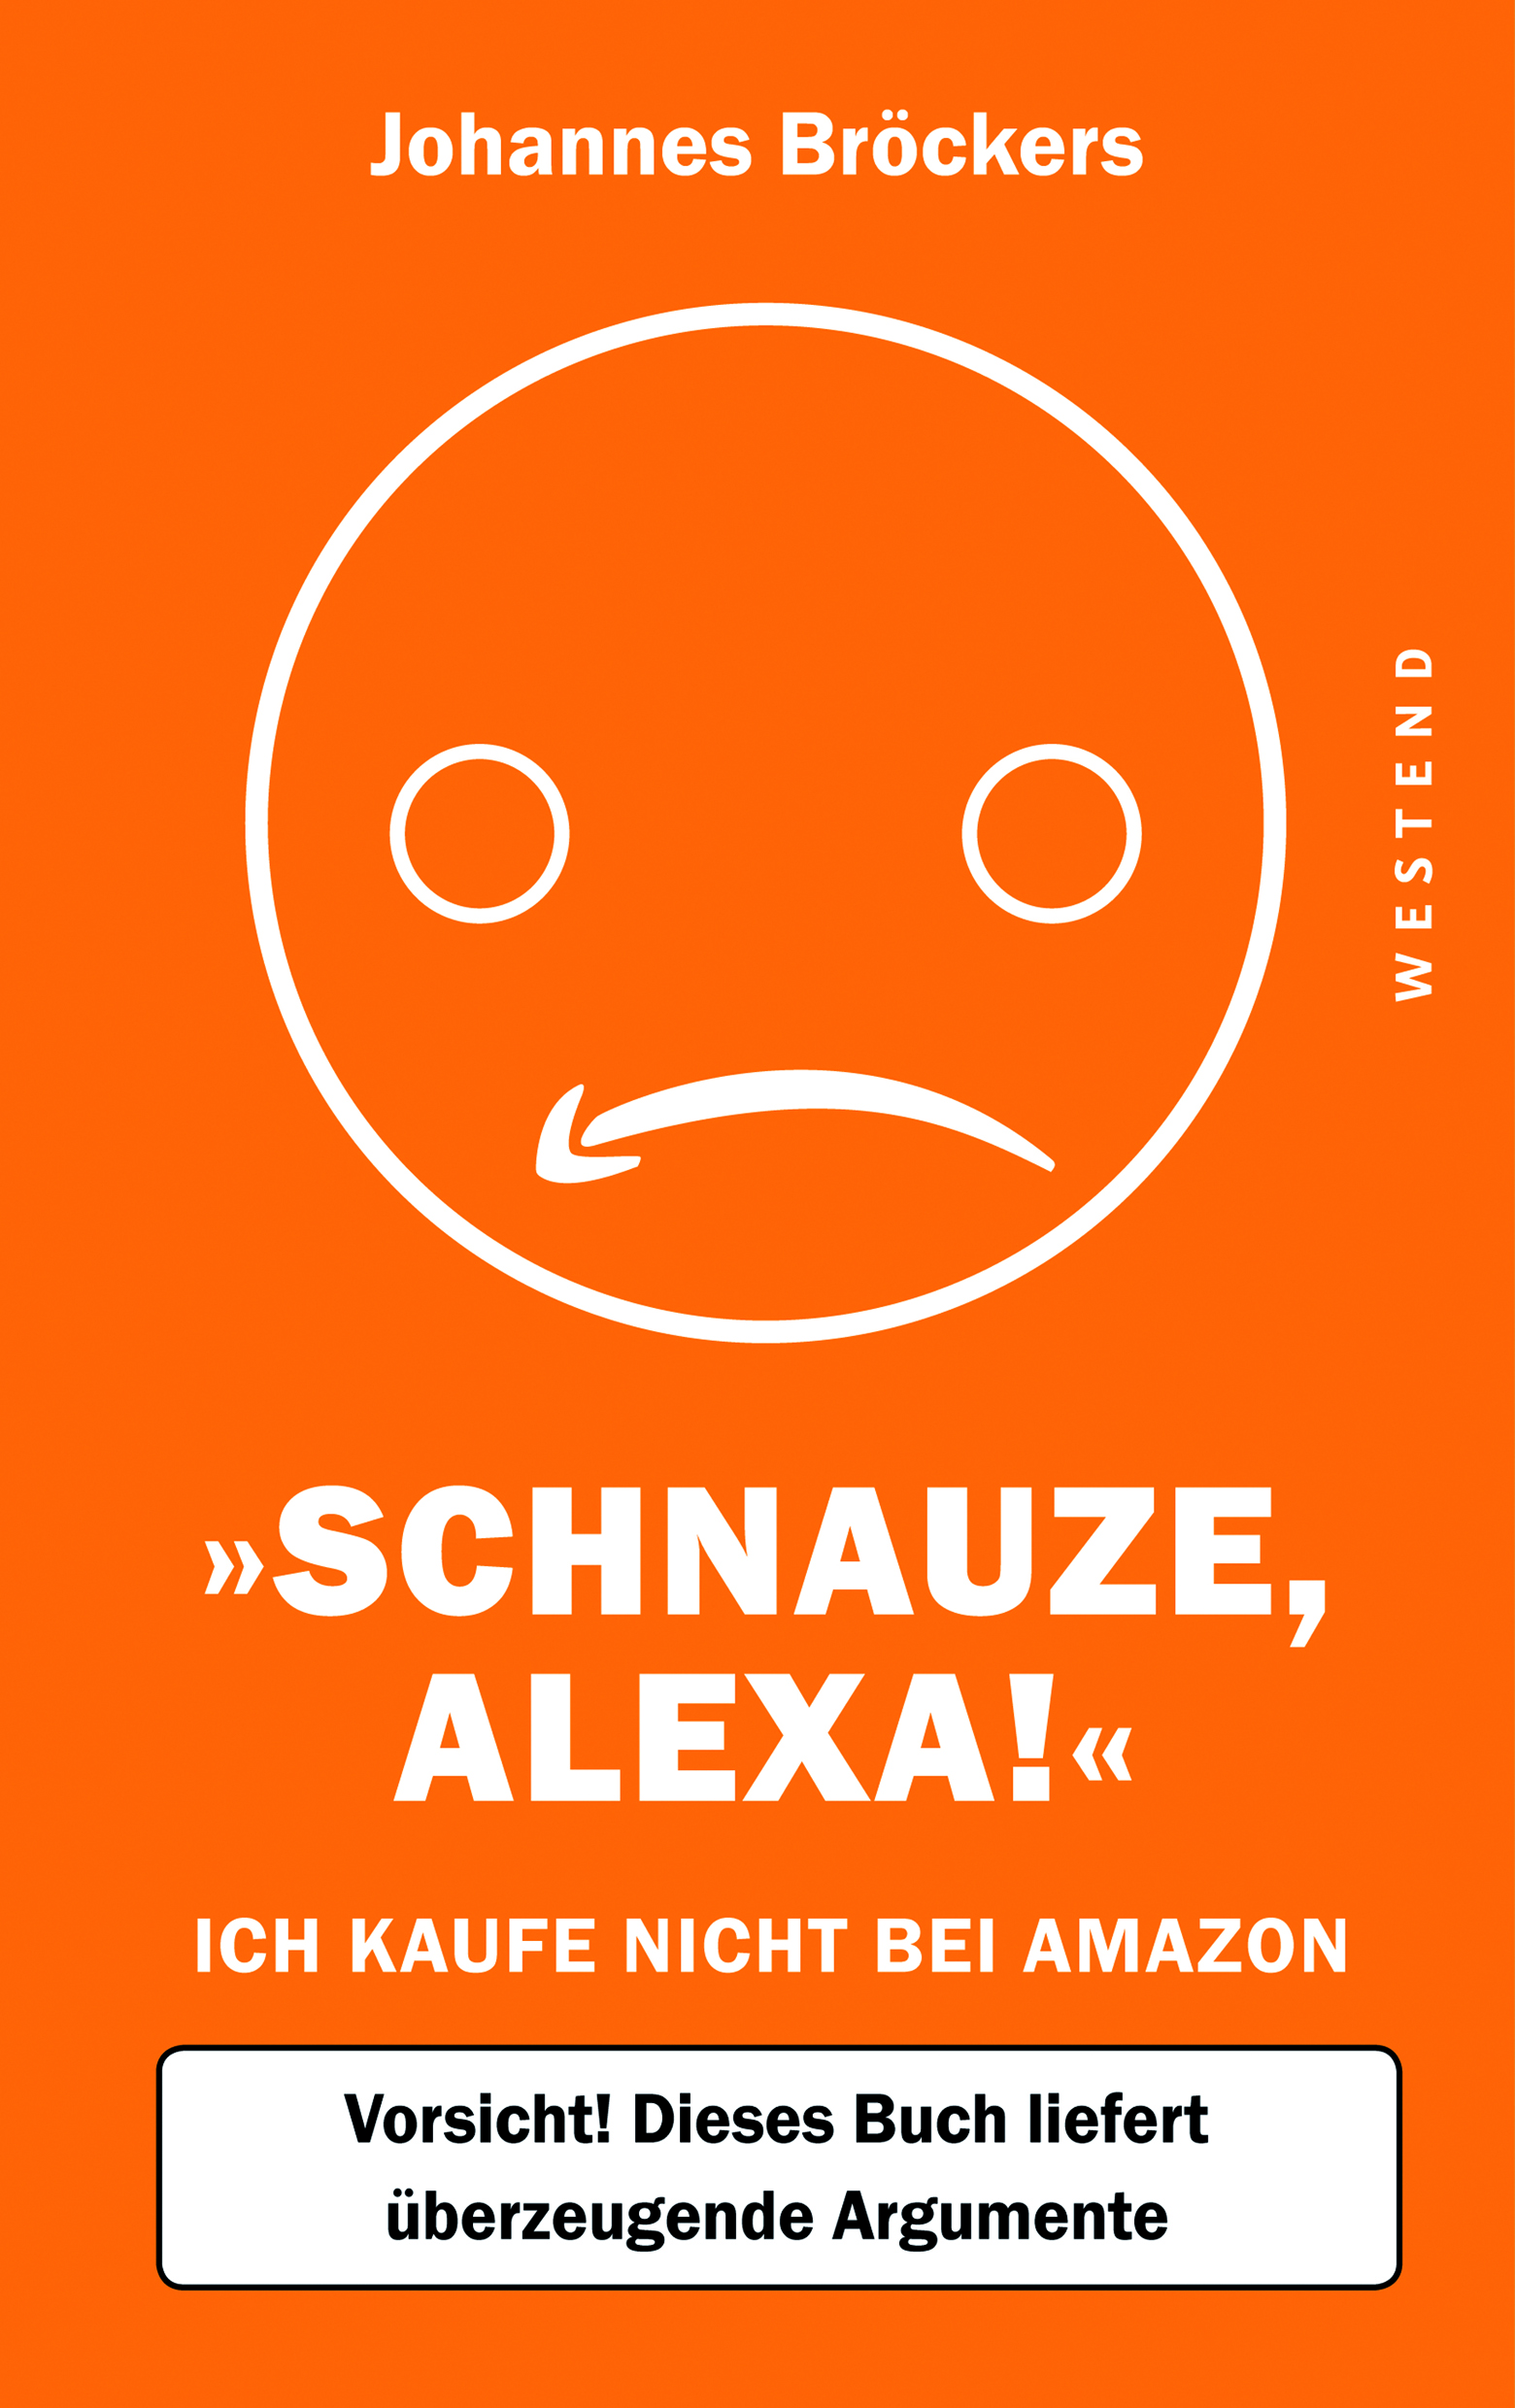 Bröckers-SchnauzeAlexa-Amazon-e-CMYK300